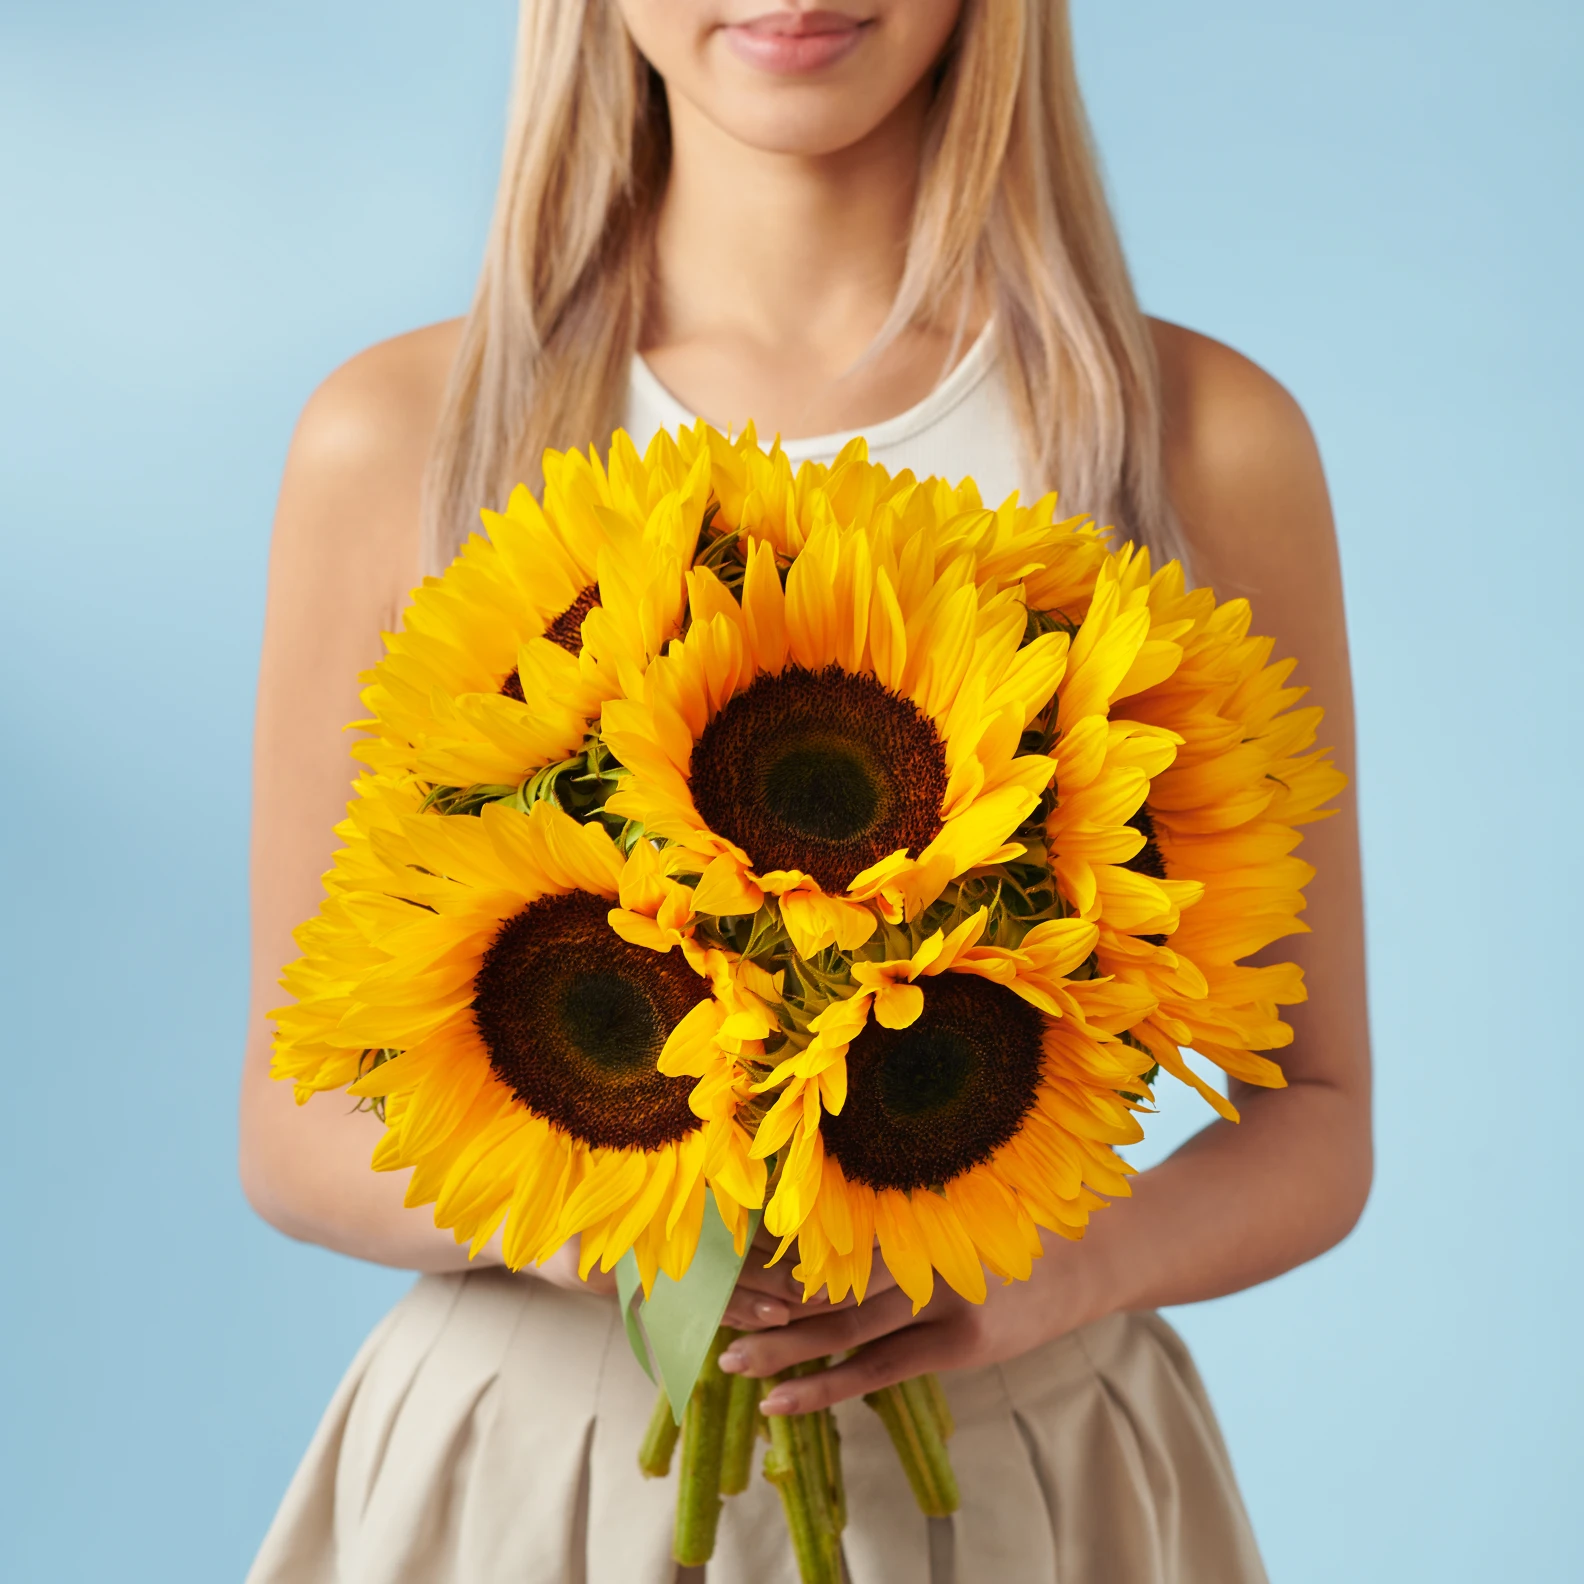 10 Sunflowers - image №1